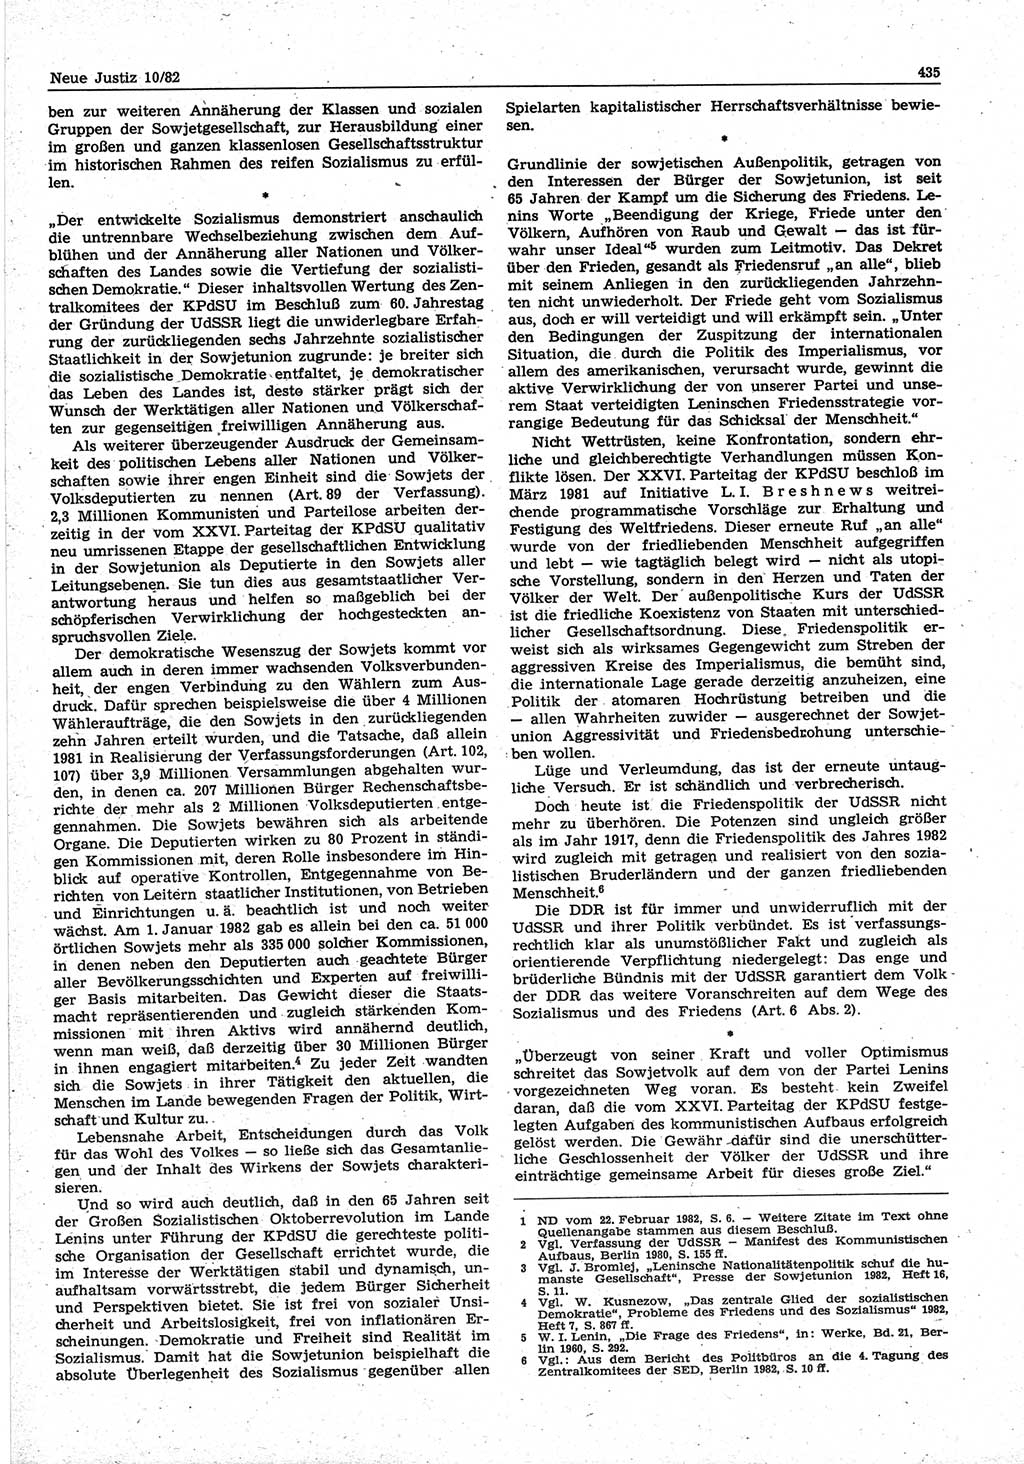 Neue Justiz (NJ), Zeitschrift für sozialistisches Recht und Gesetzlichkeit [Deutsche Demokratische Republik (DDR)], 36. Jahrgang 1982, Seite 435 (NJ DDR 1982, S. 435)